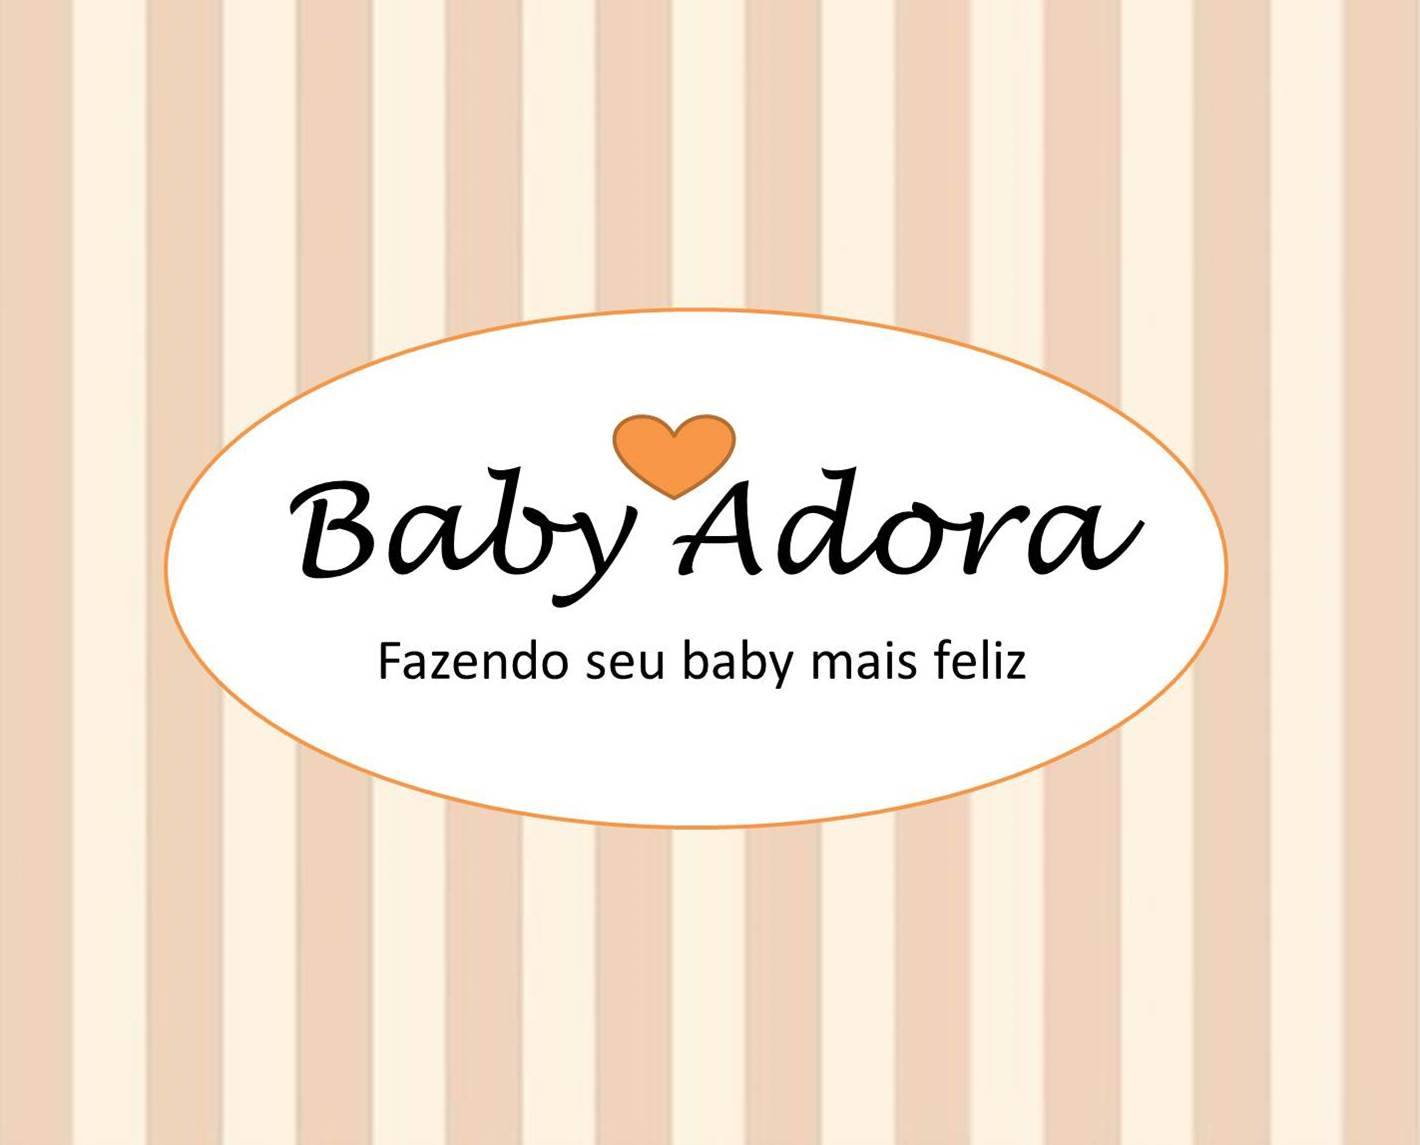 Baby Adora